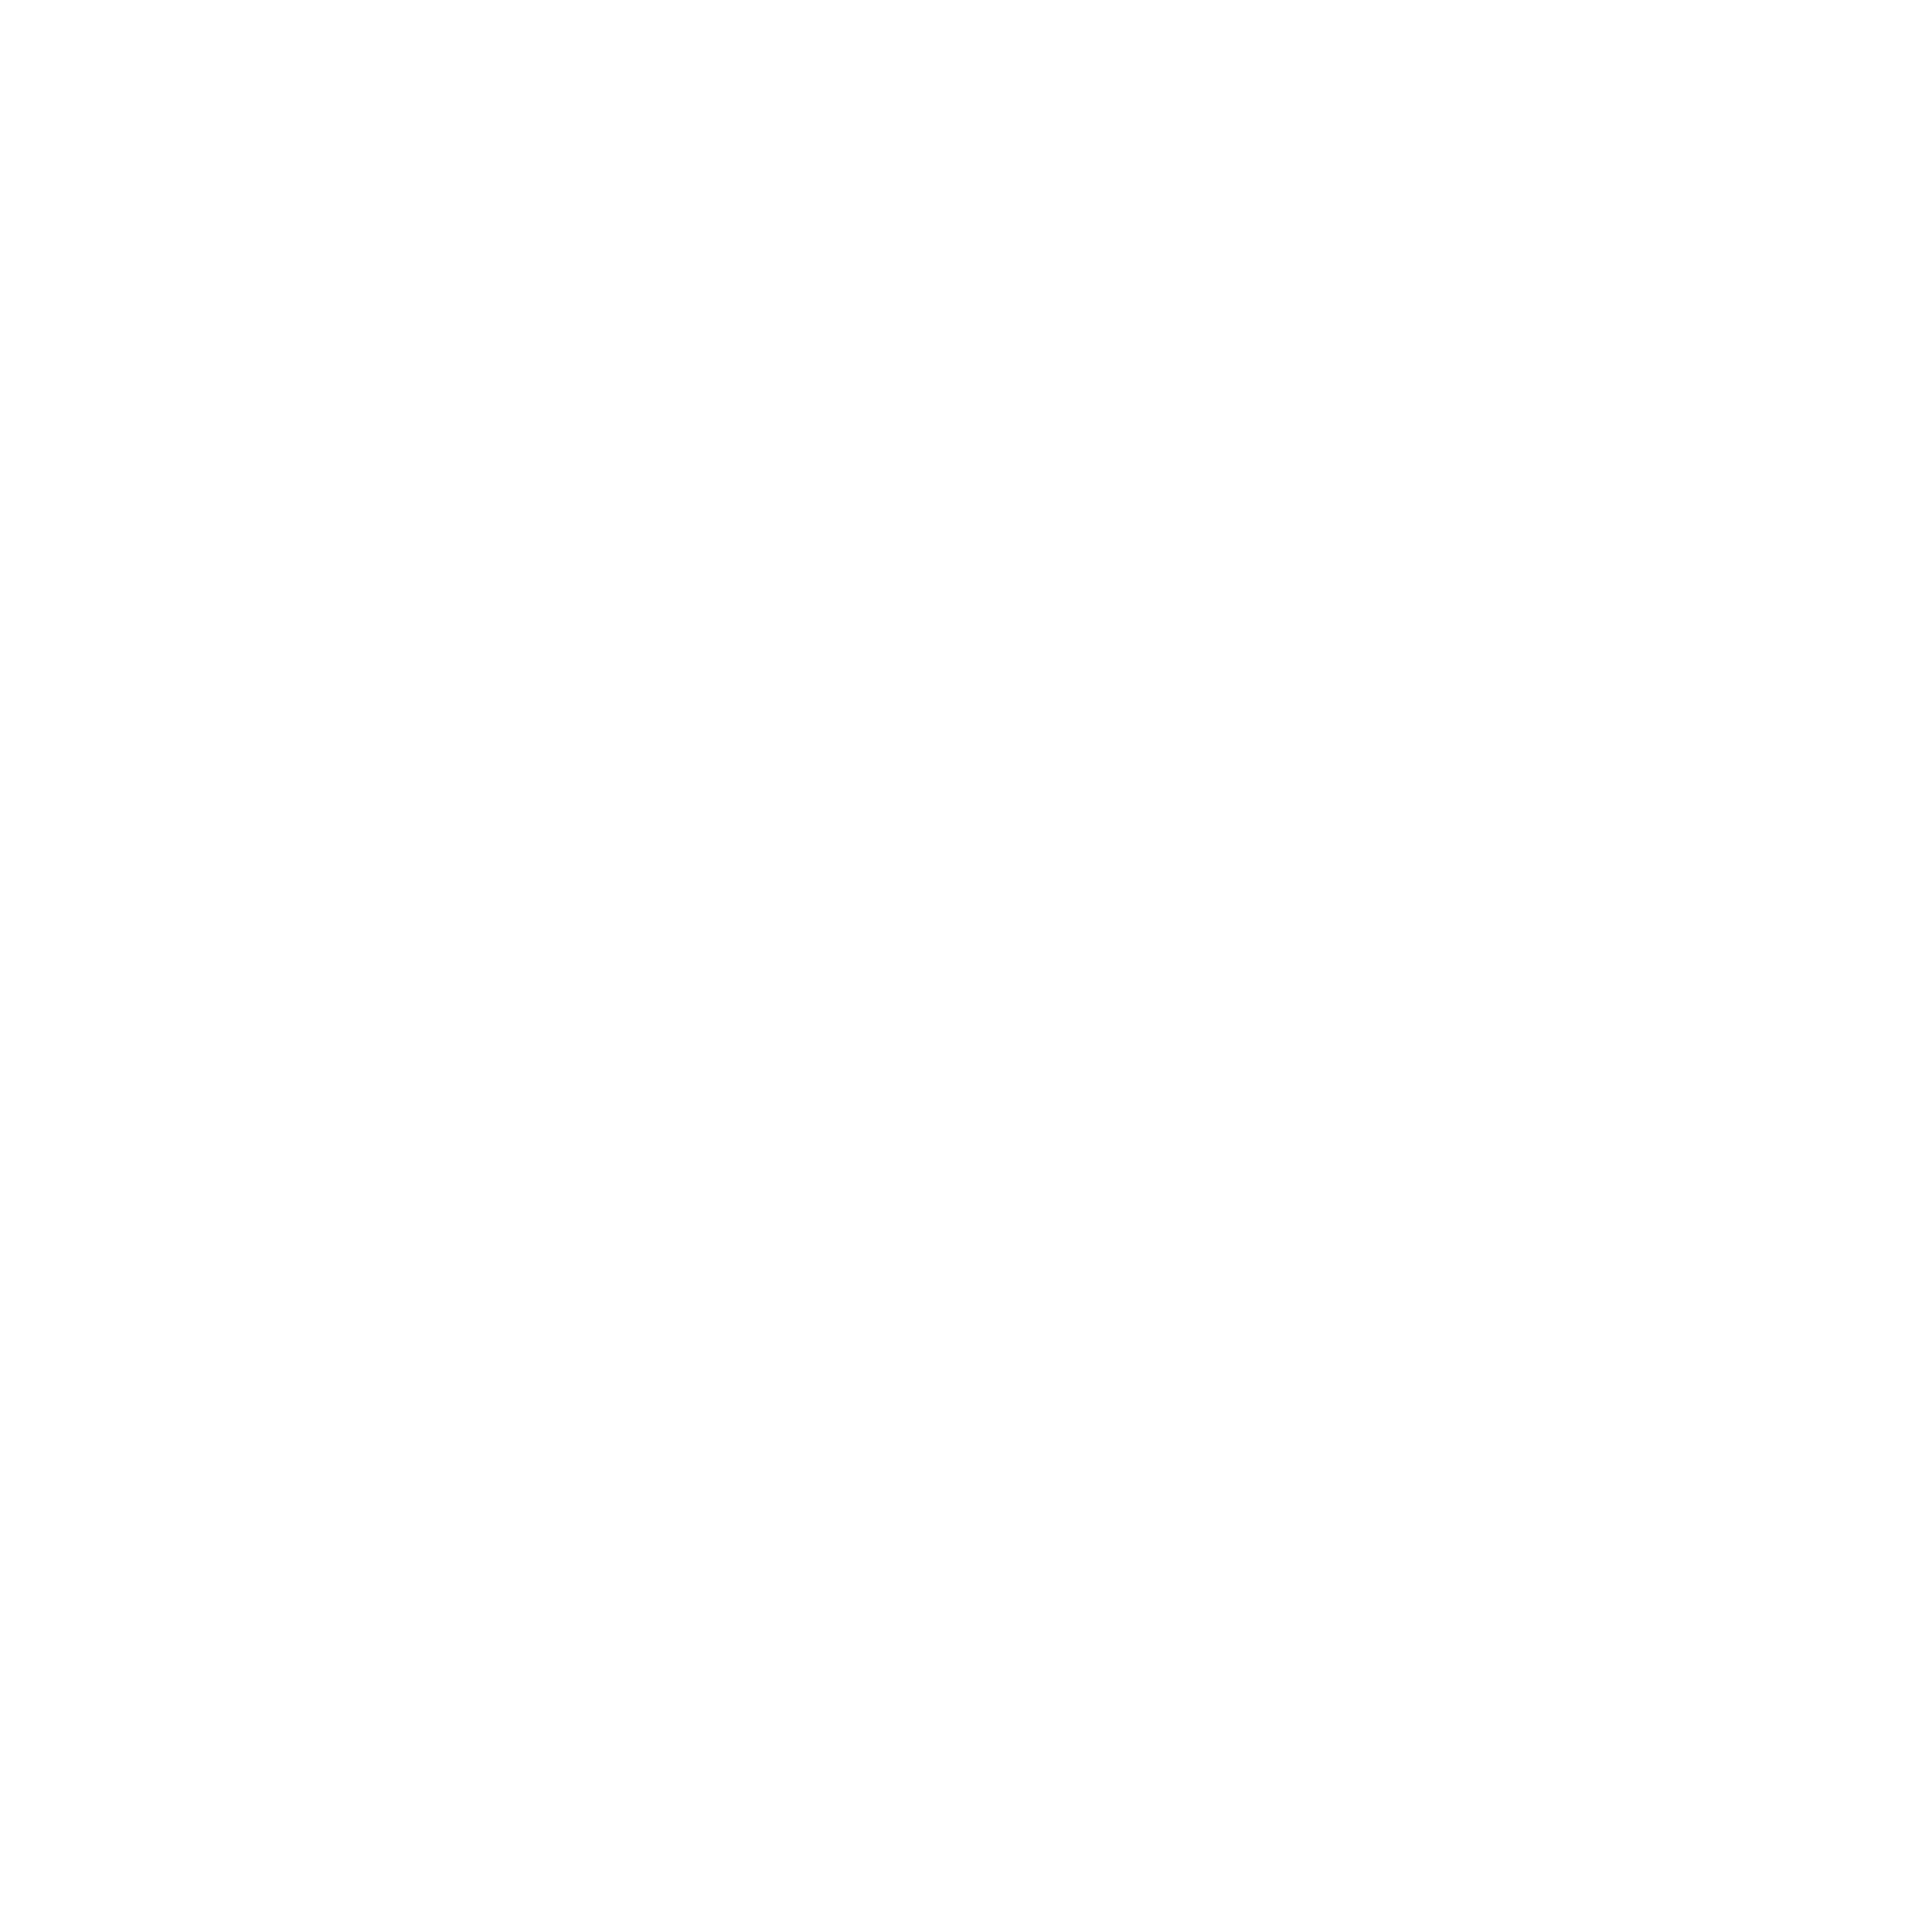 Iona R. Rudisill